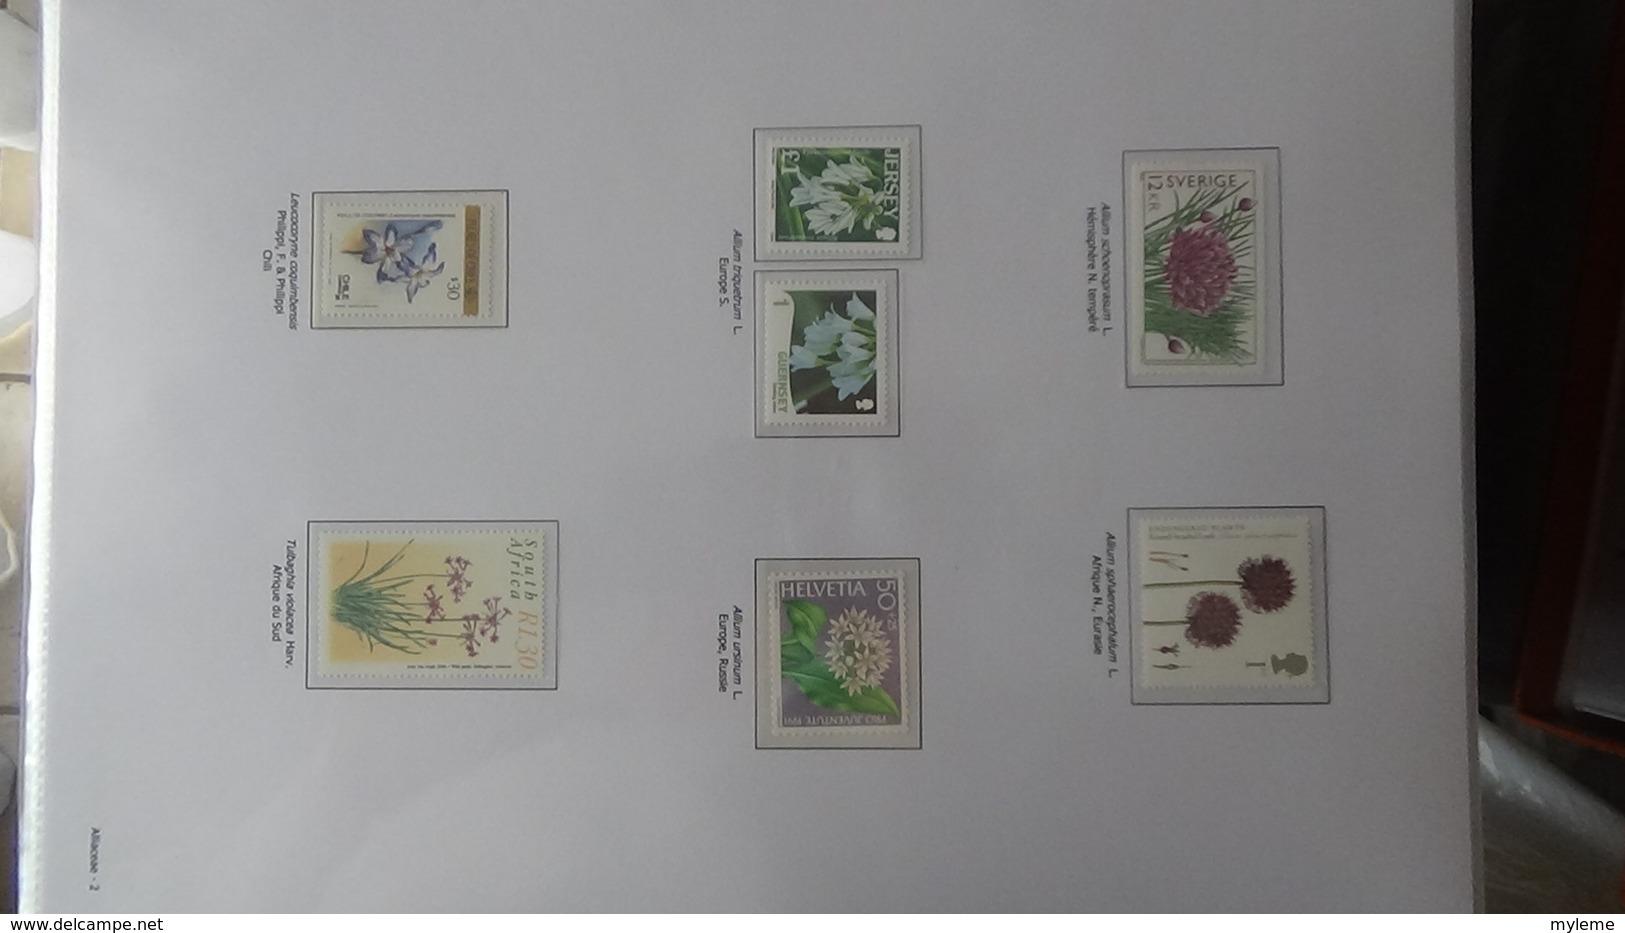 Dispersion d'une grosse collection thématique dont les Plantes Angiospermes Tome 1 . A saisir !!!